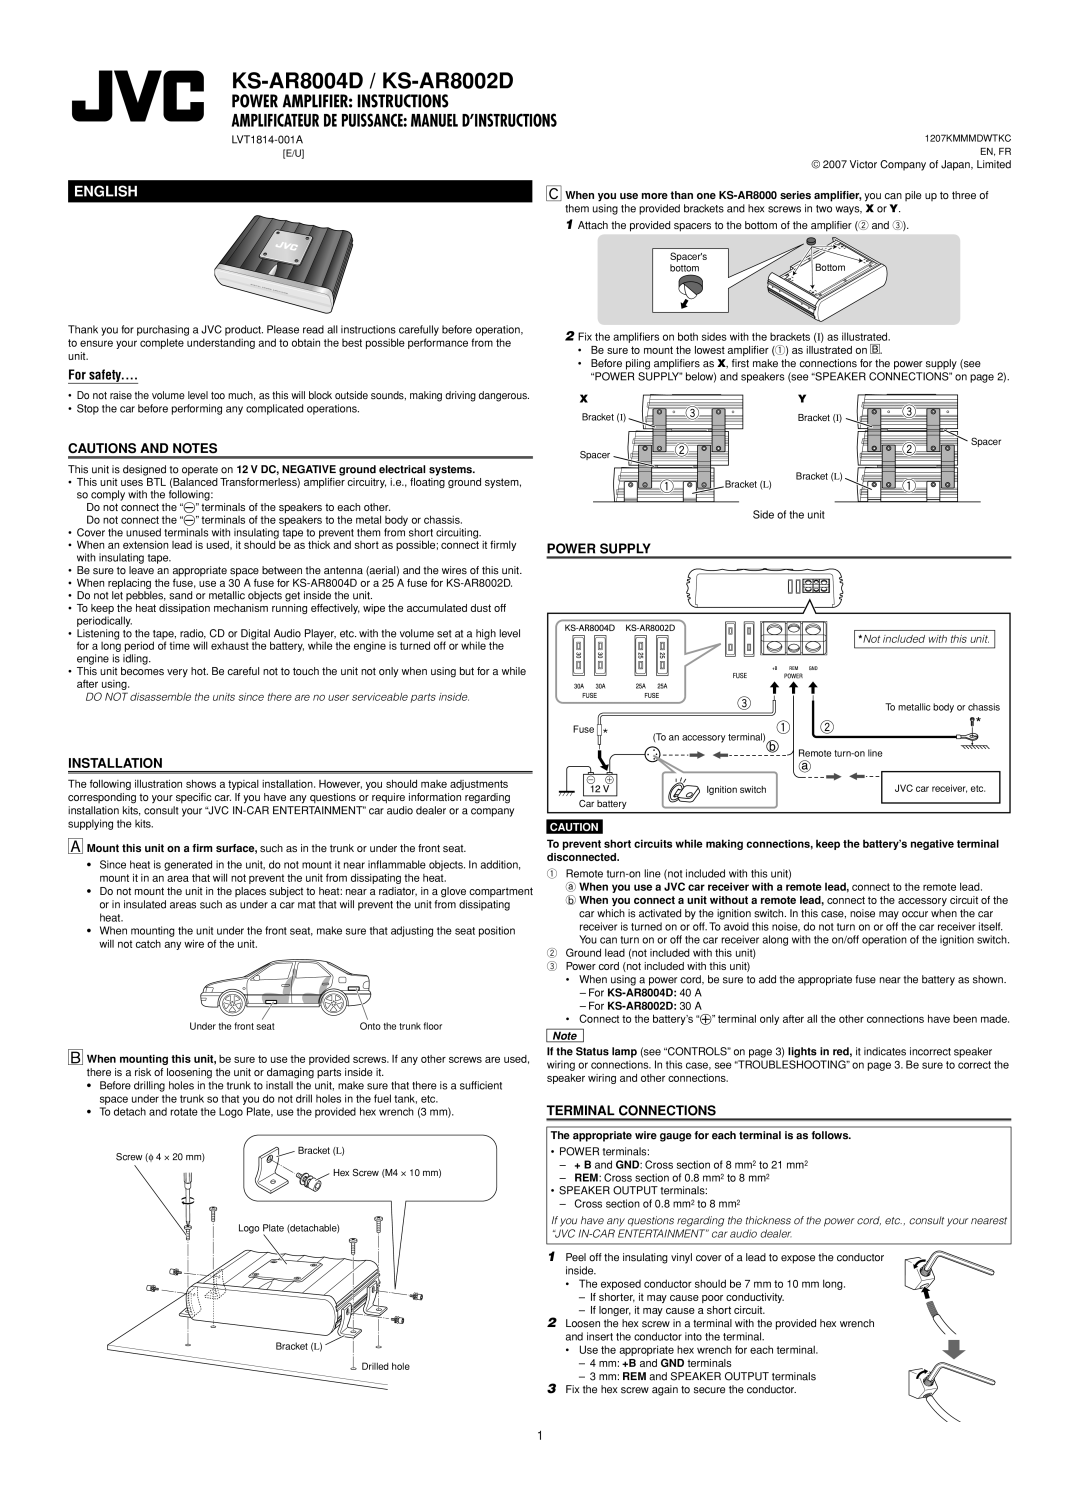 Victor Enterprise KS-AR8002D manual Power Amplifier Instructions, Amplificateur De Puissance Manuel D’Instructions, English 